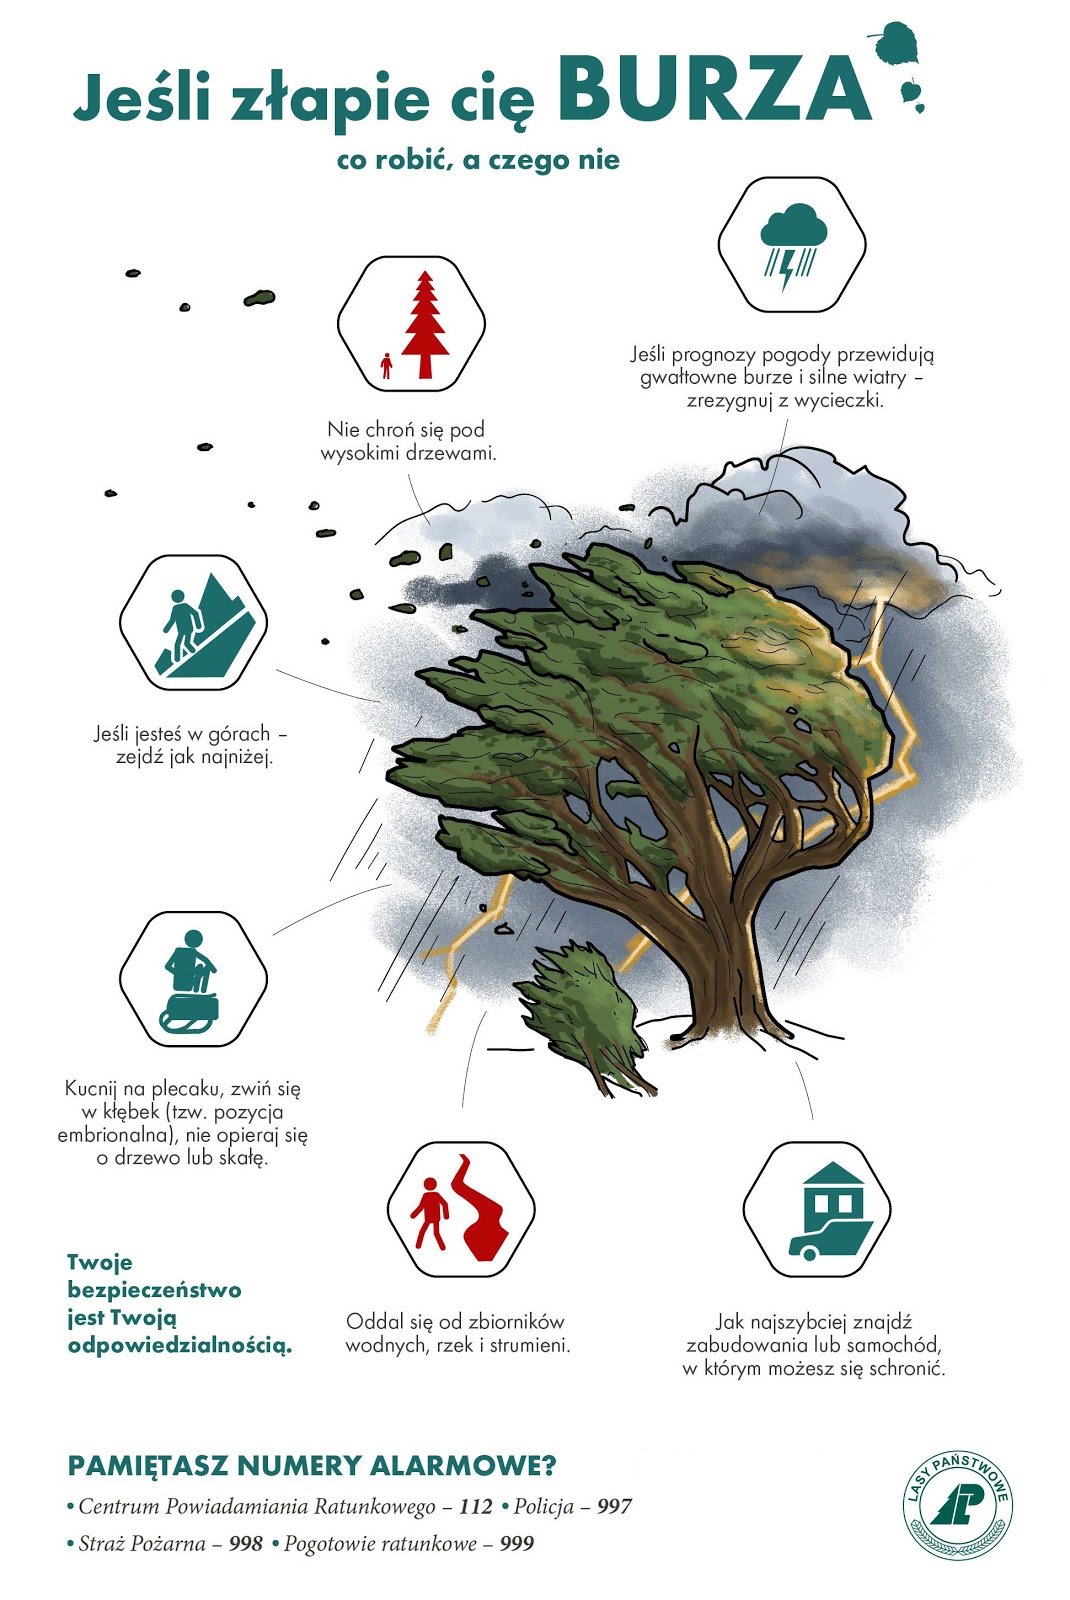 Infografika przedstawia porady dotyczące zachowania się w lesie podzcas burzy. Źródło: CILP.